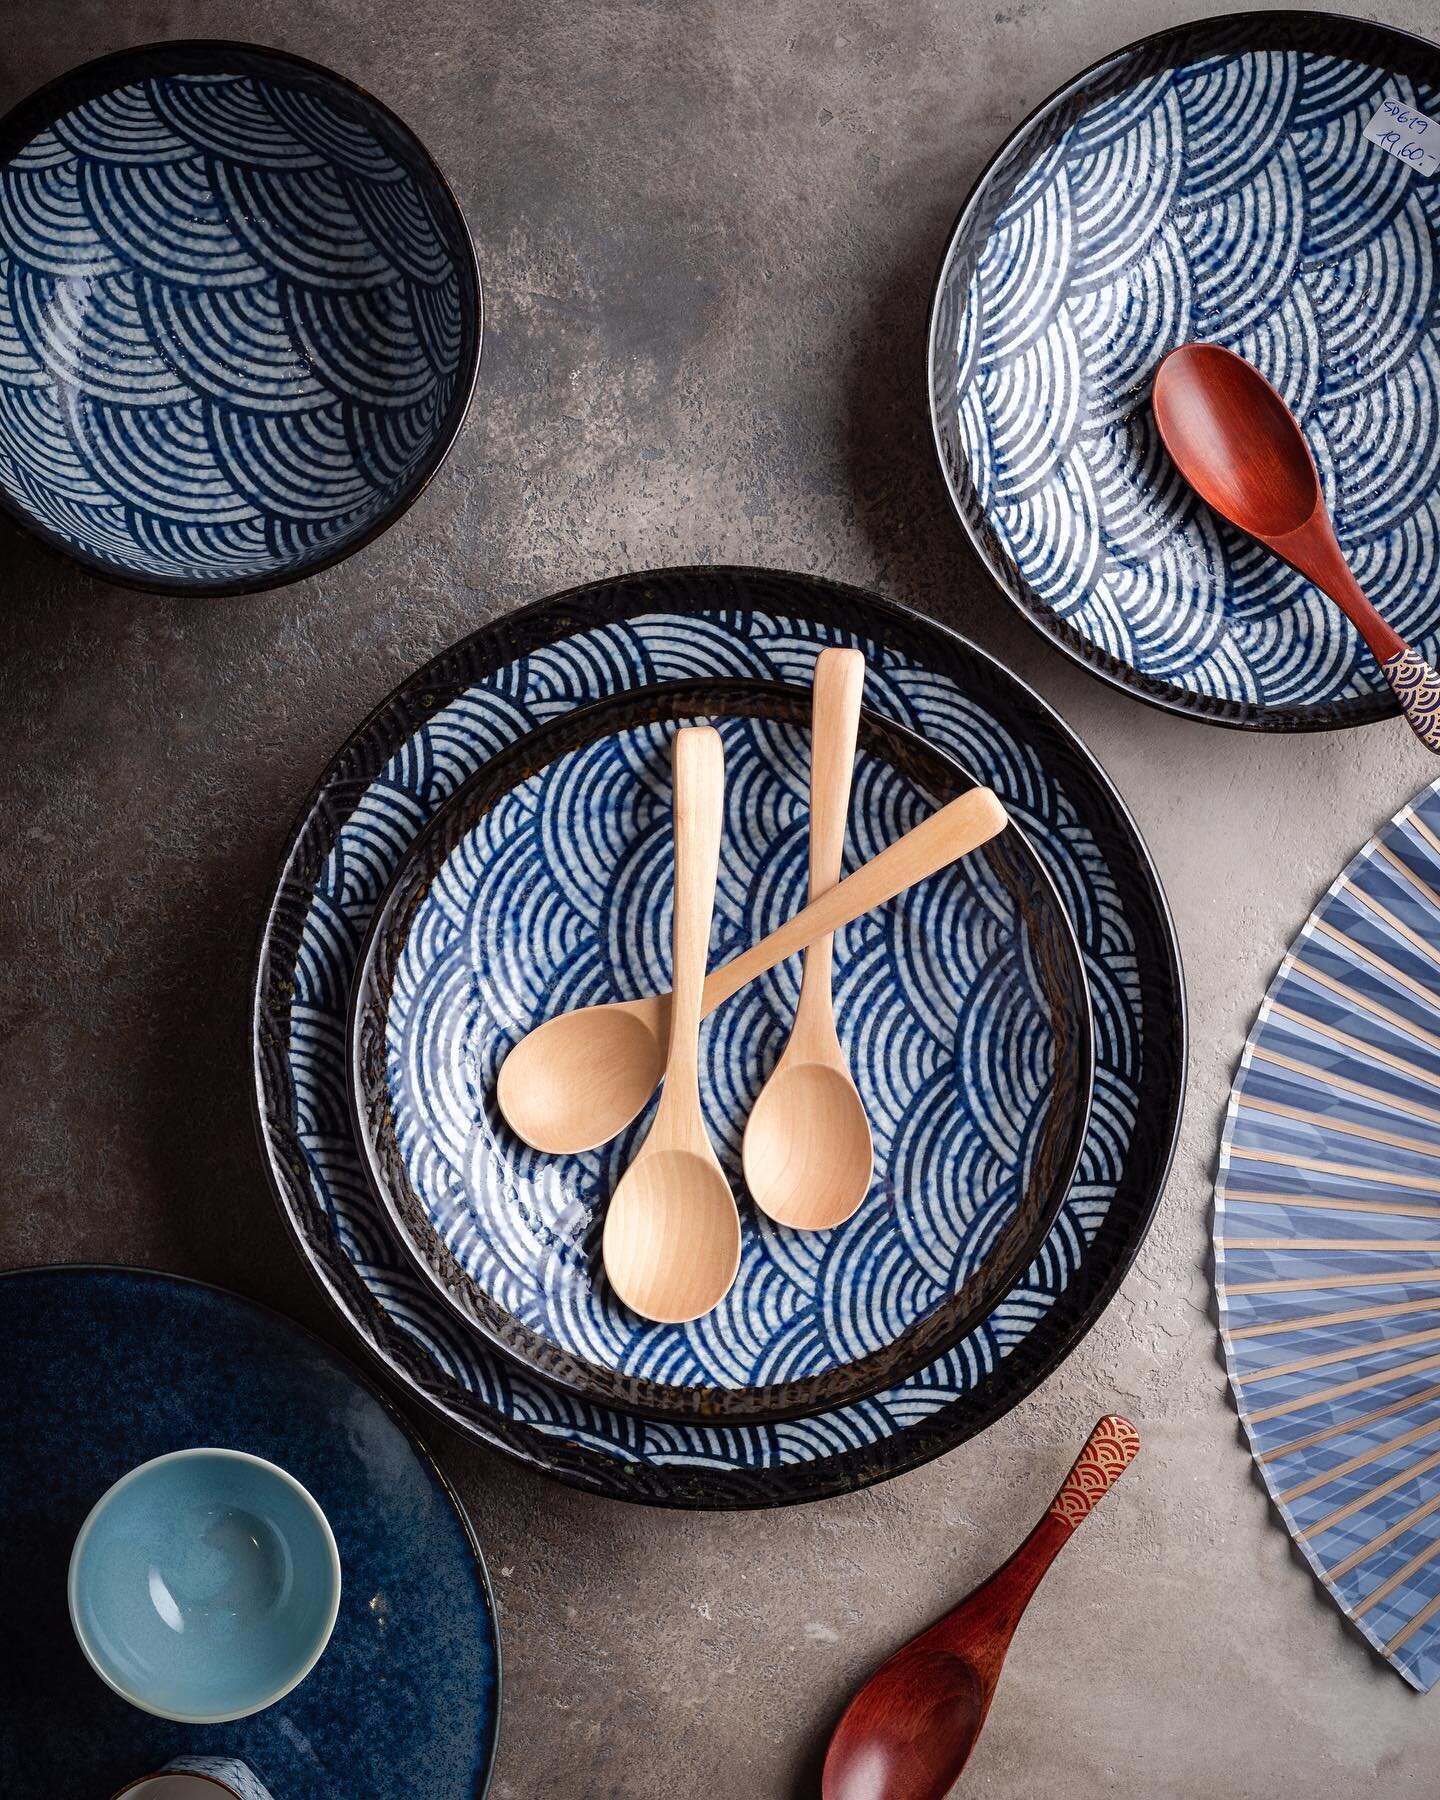 Retrouvez la collection nami, les
vagues japonaise.
.
#vague #japon #nami #plate #assiette #fournisseur #bordeaux #paris #decoration #porcelaine #ceramics
#ceramique #traditional #traditionel #maison #design #professional #online #boutique #decoratio